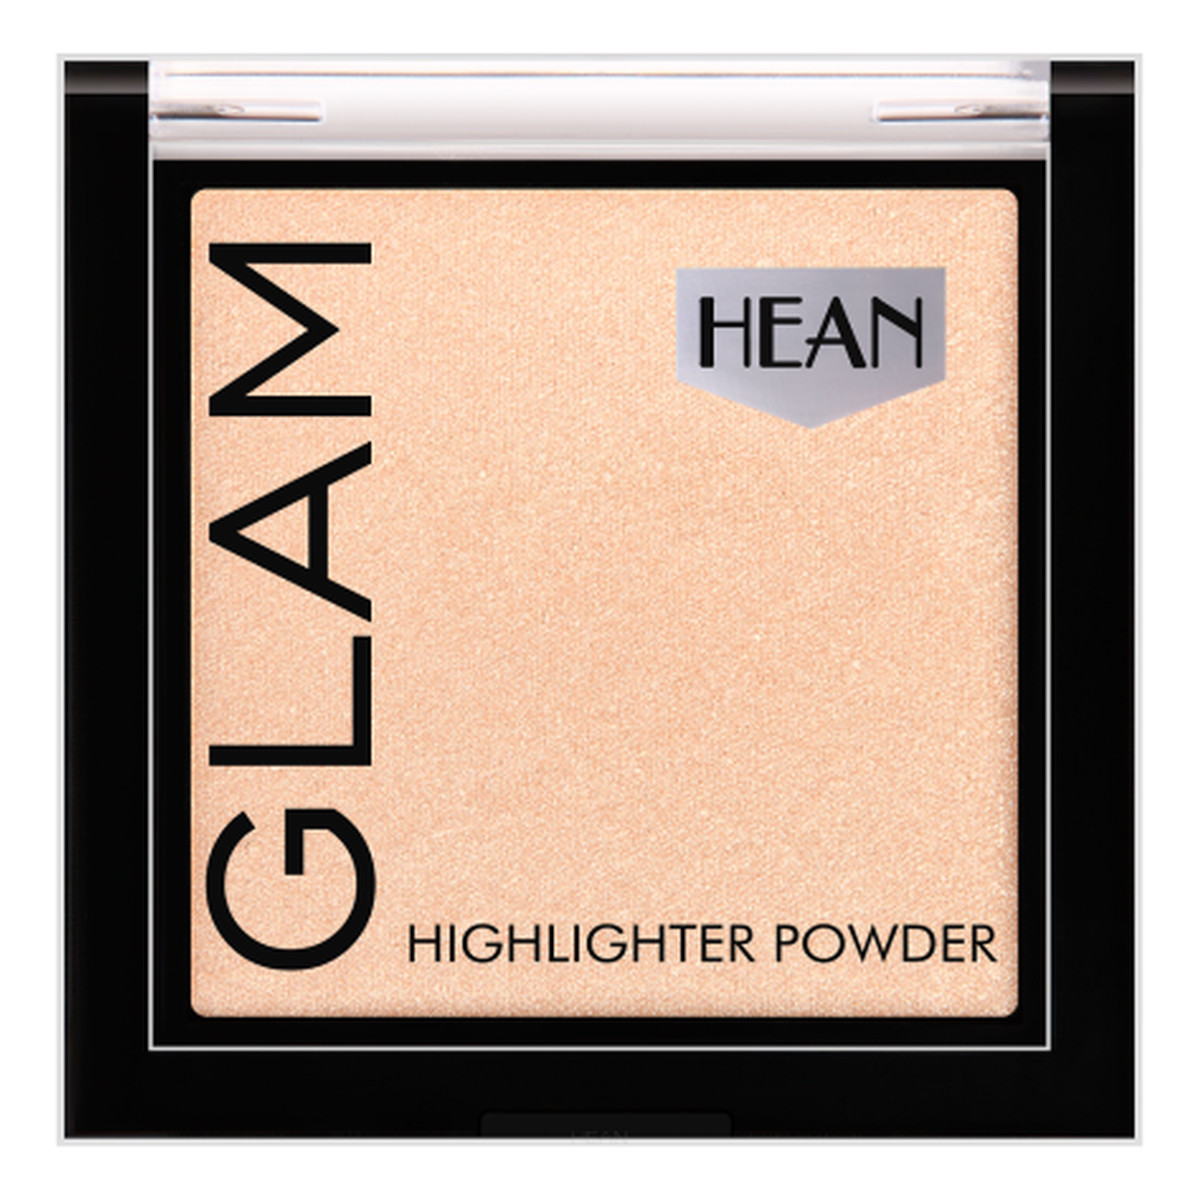 Hean Glam Highlighter Powder Wielofunkcyjny rozświetlacz do twarzy i ciała